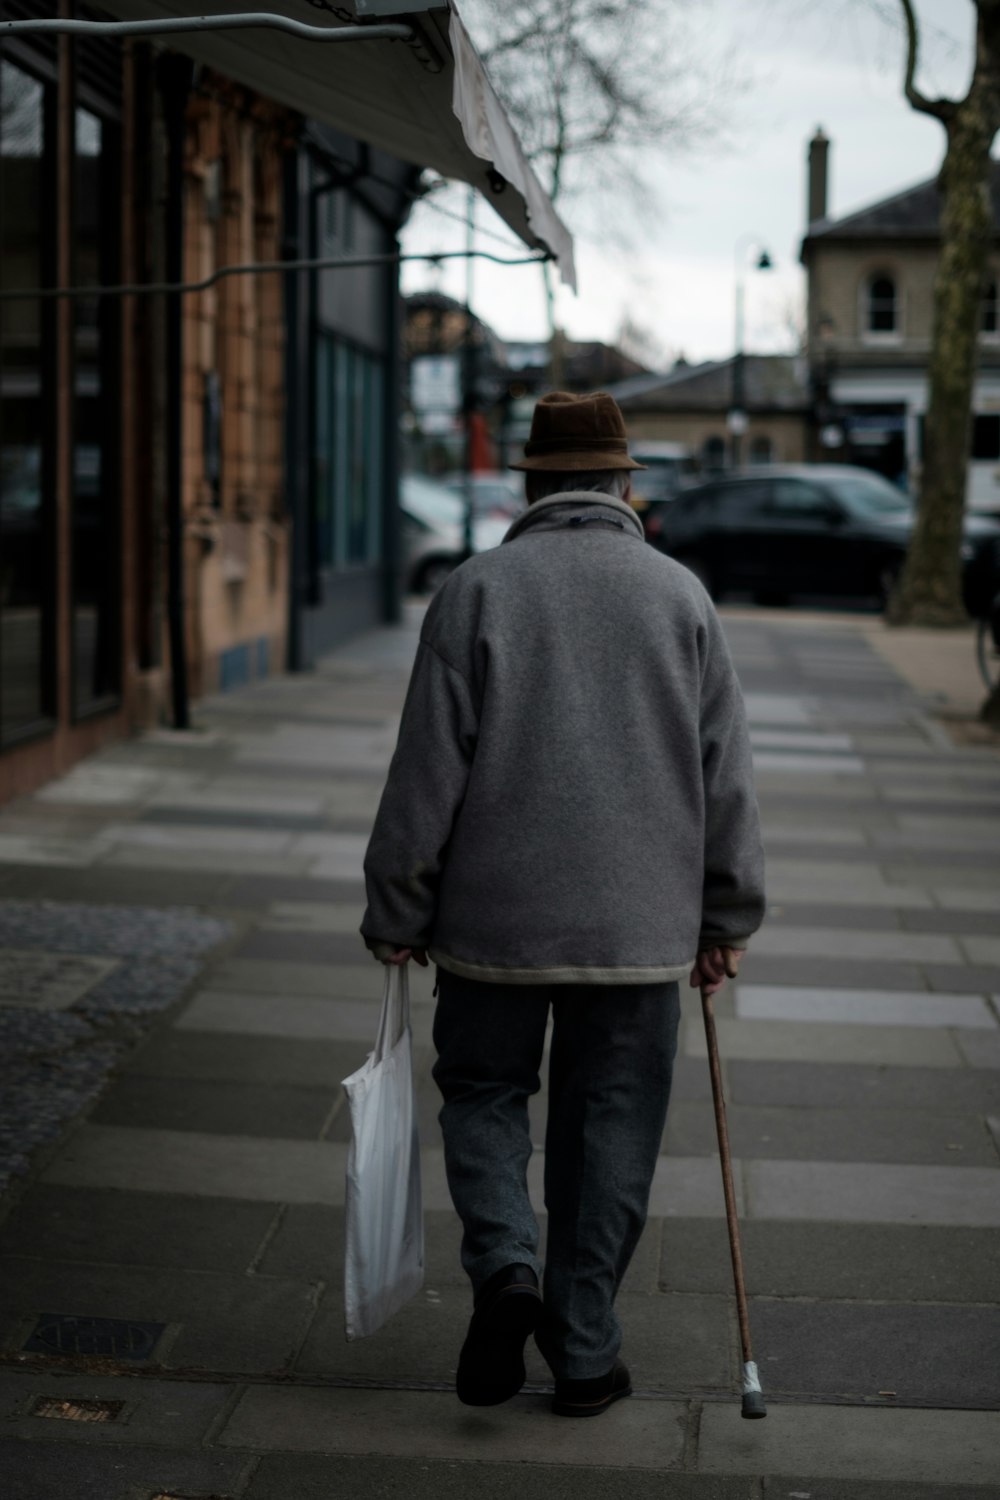 昼間、茶色の杖をついて白い袋を持って茶色の建物の近くを歩く男性